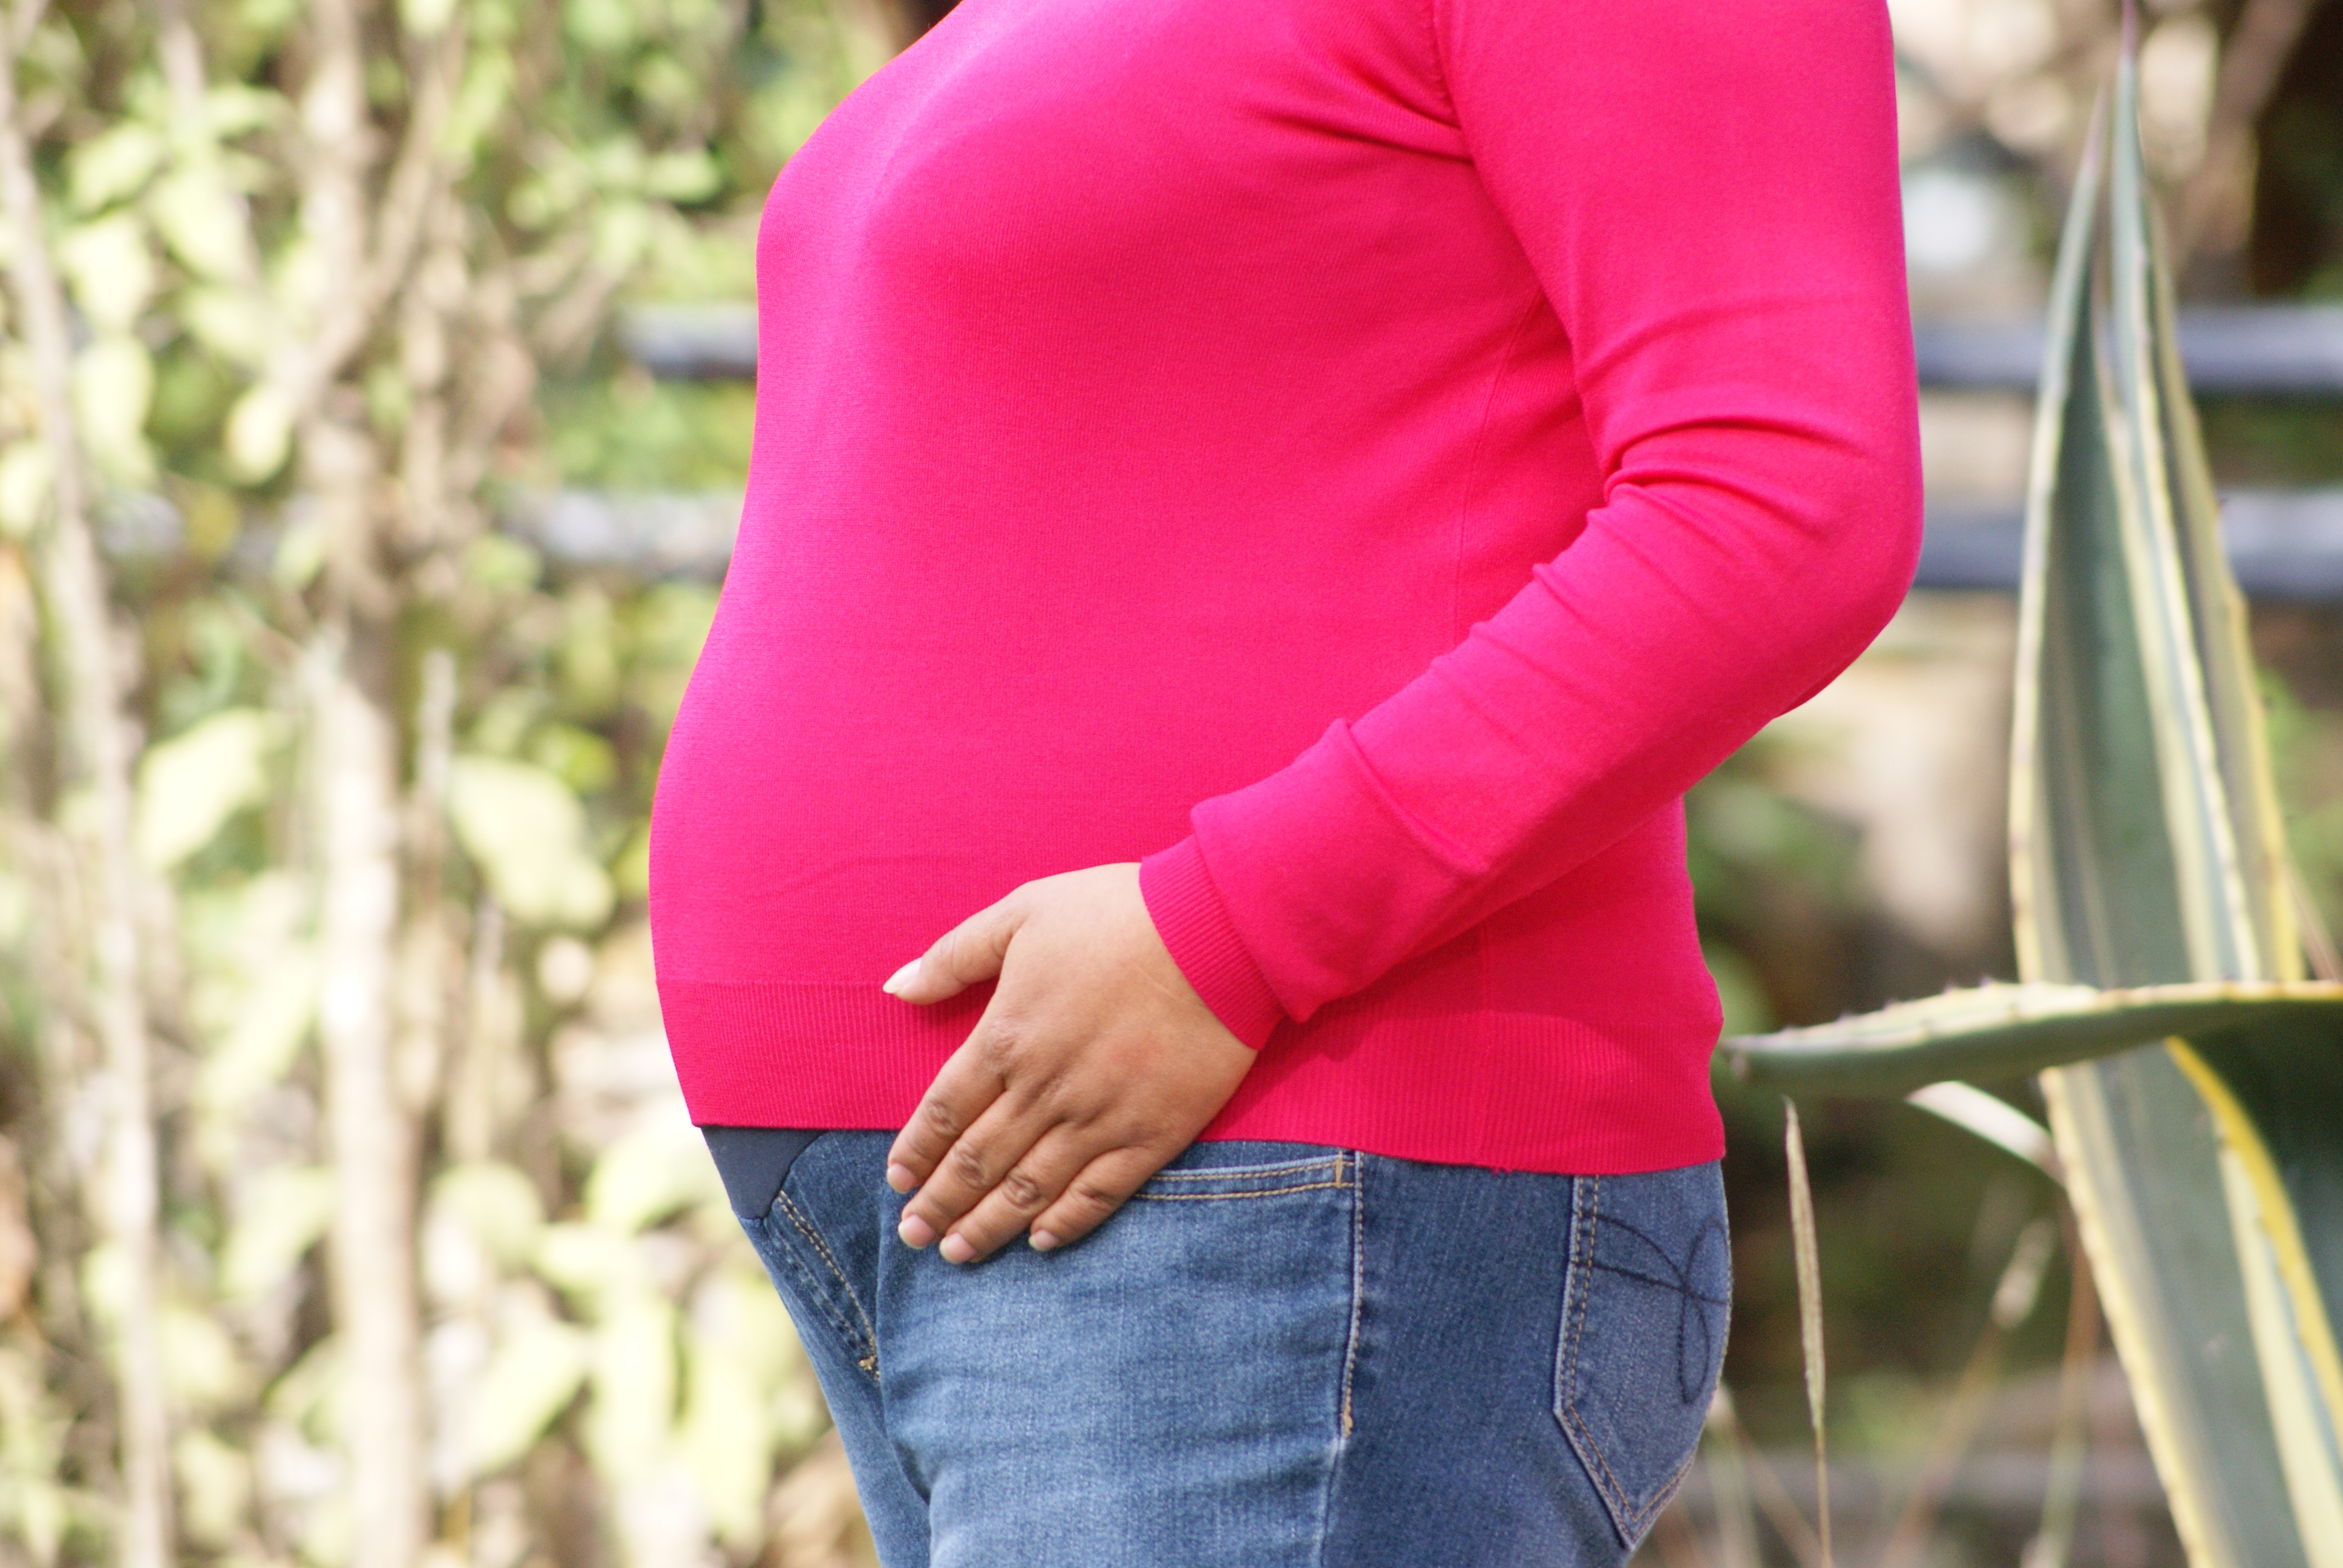 Mujeres embarazadas, atención segura de su salud y parto en